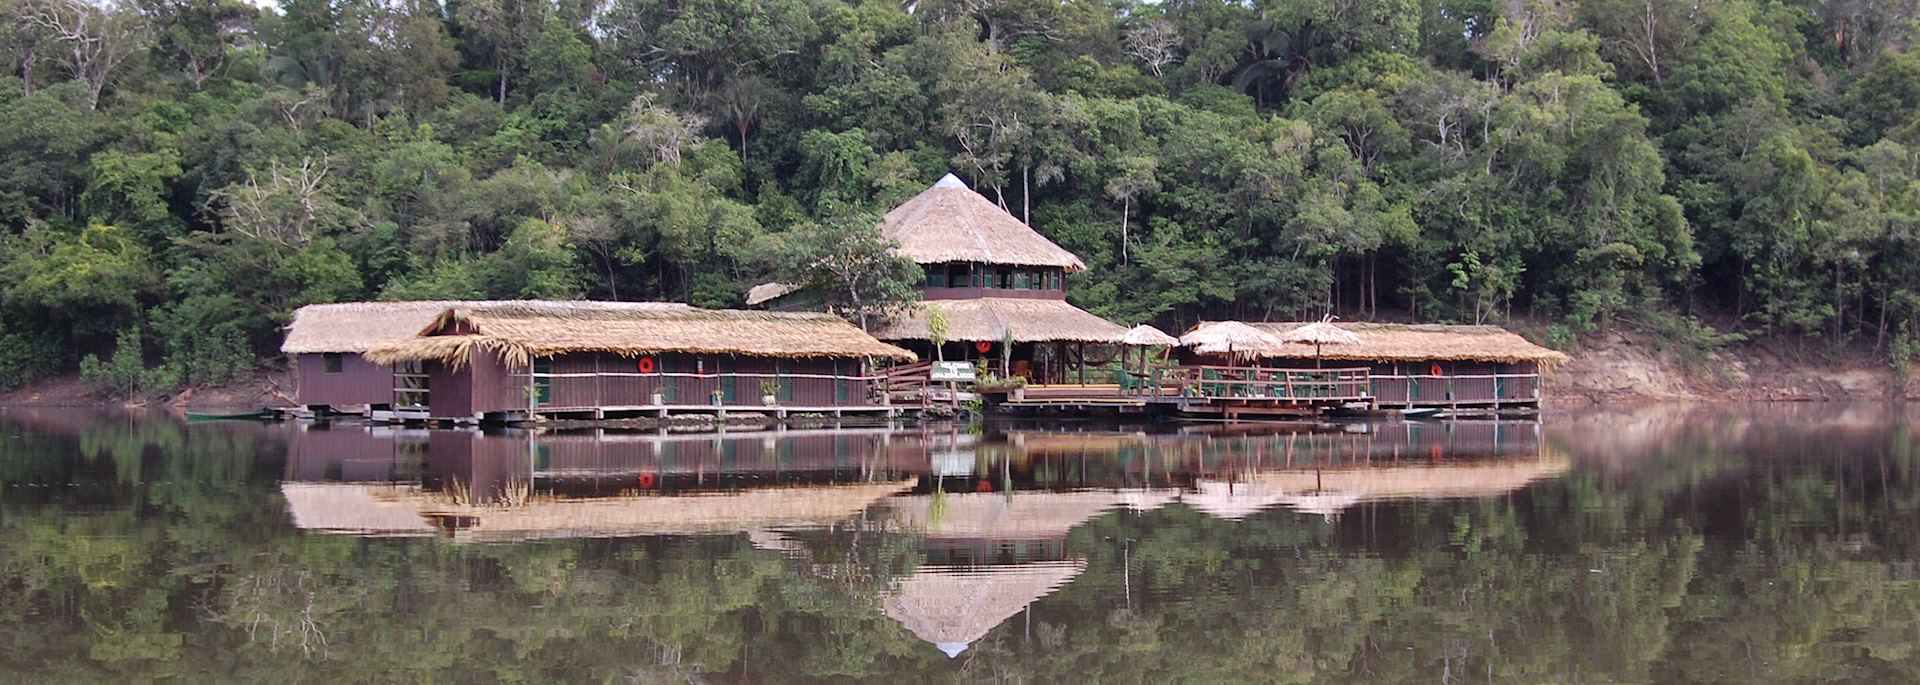 Amazon Lodge